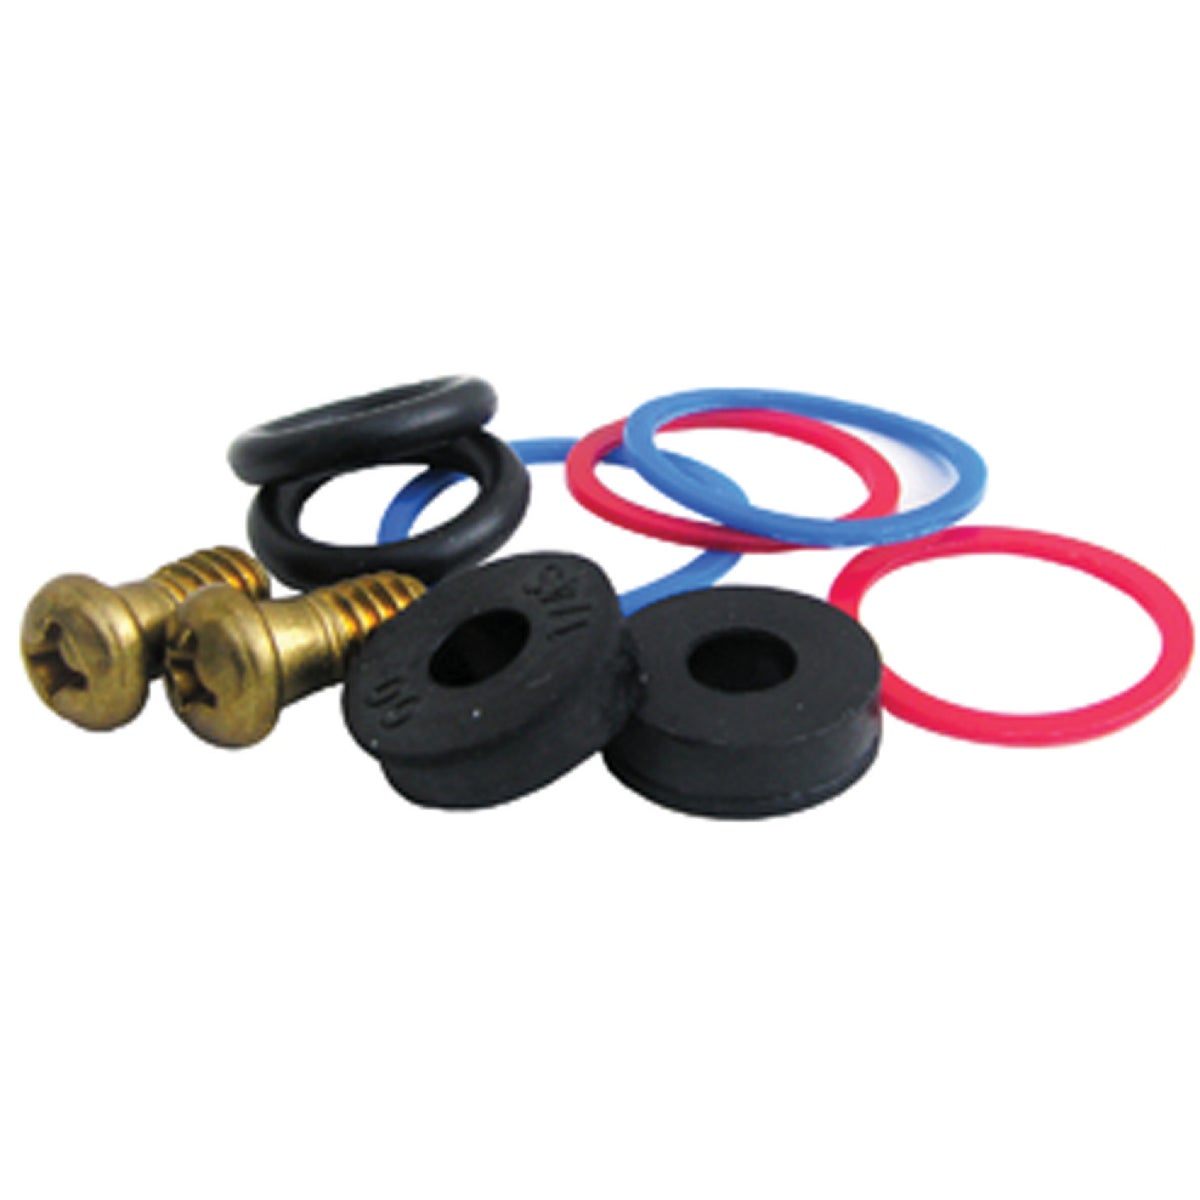 Lasco 10pc PP Stem Repair Kit Rubber, Nylon & Brass Faucet Repair Kit